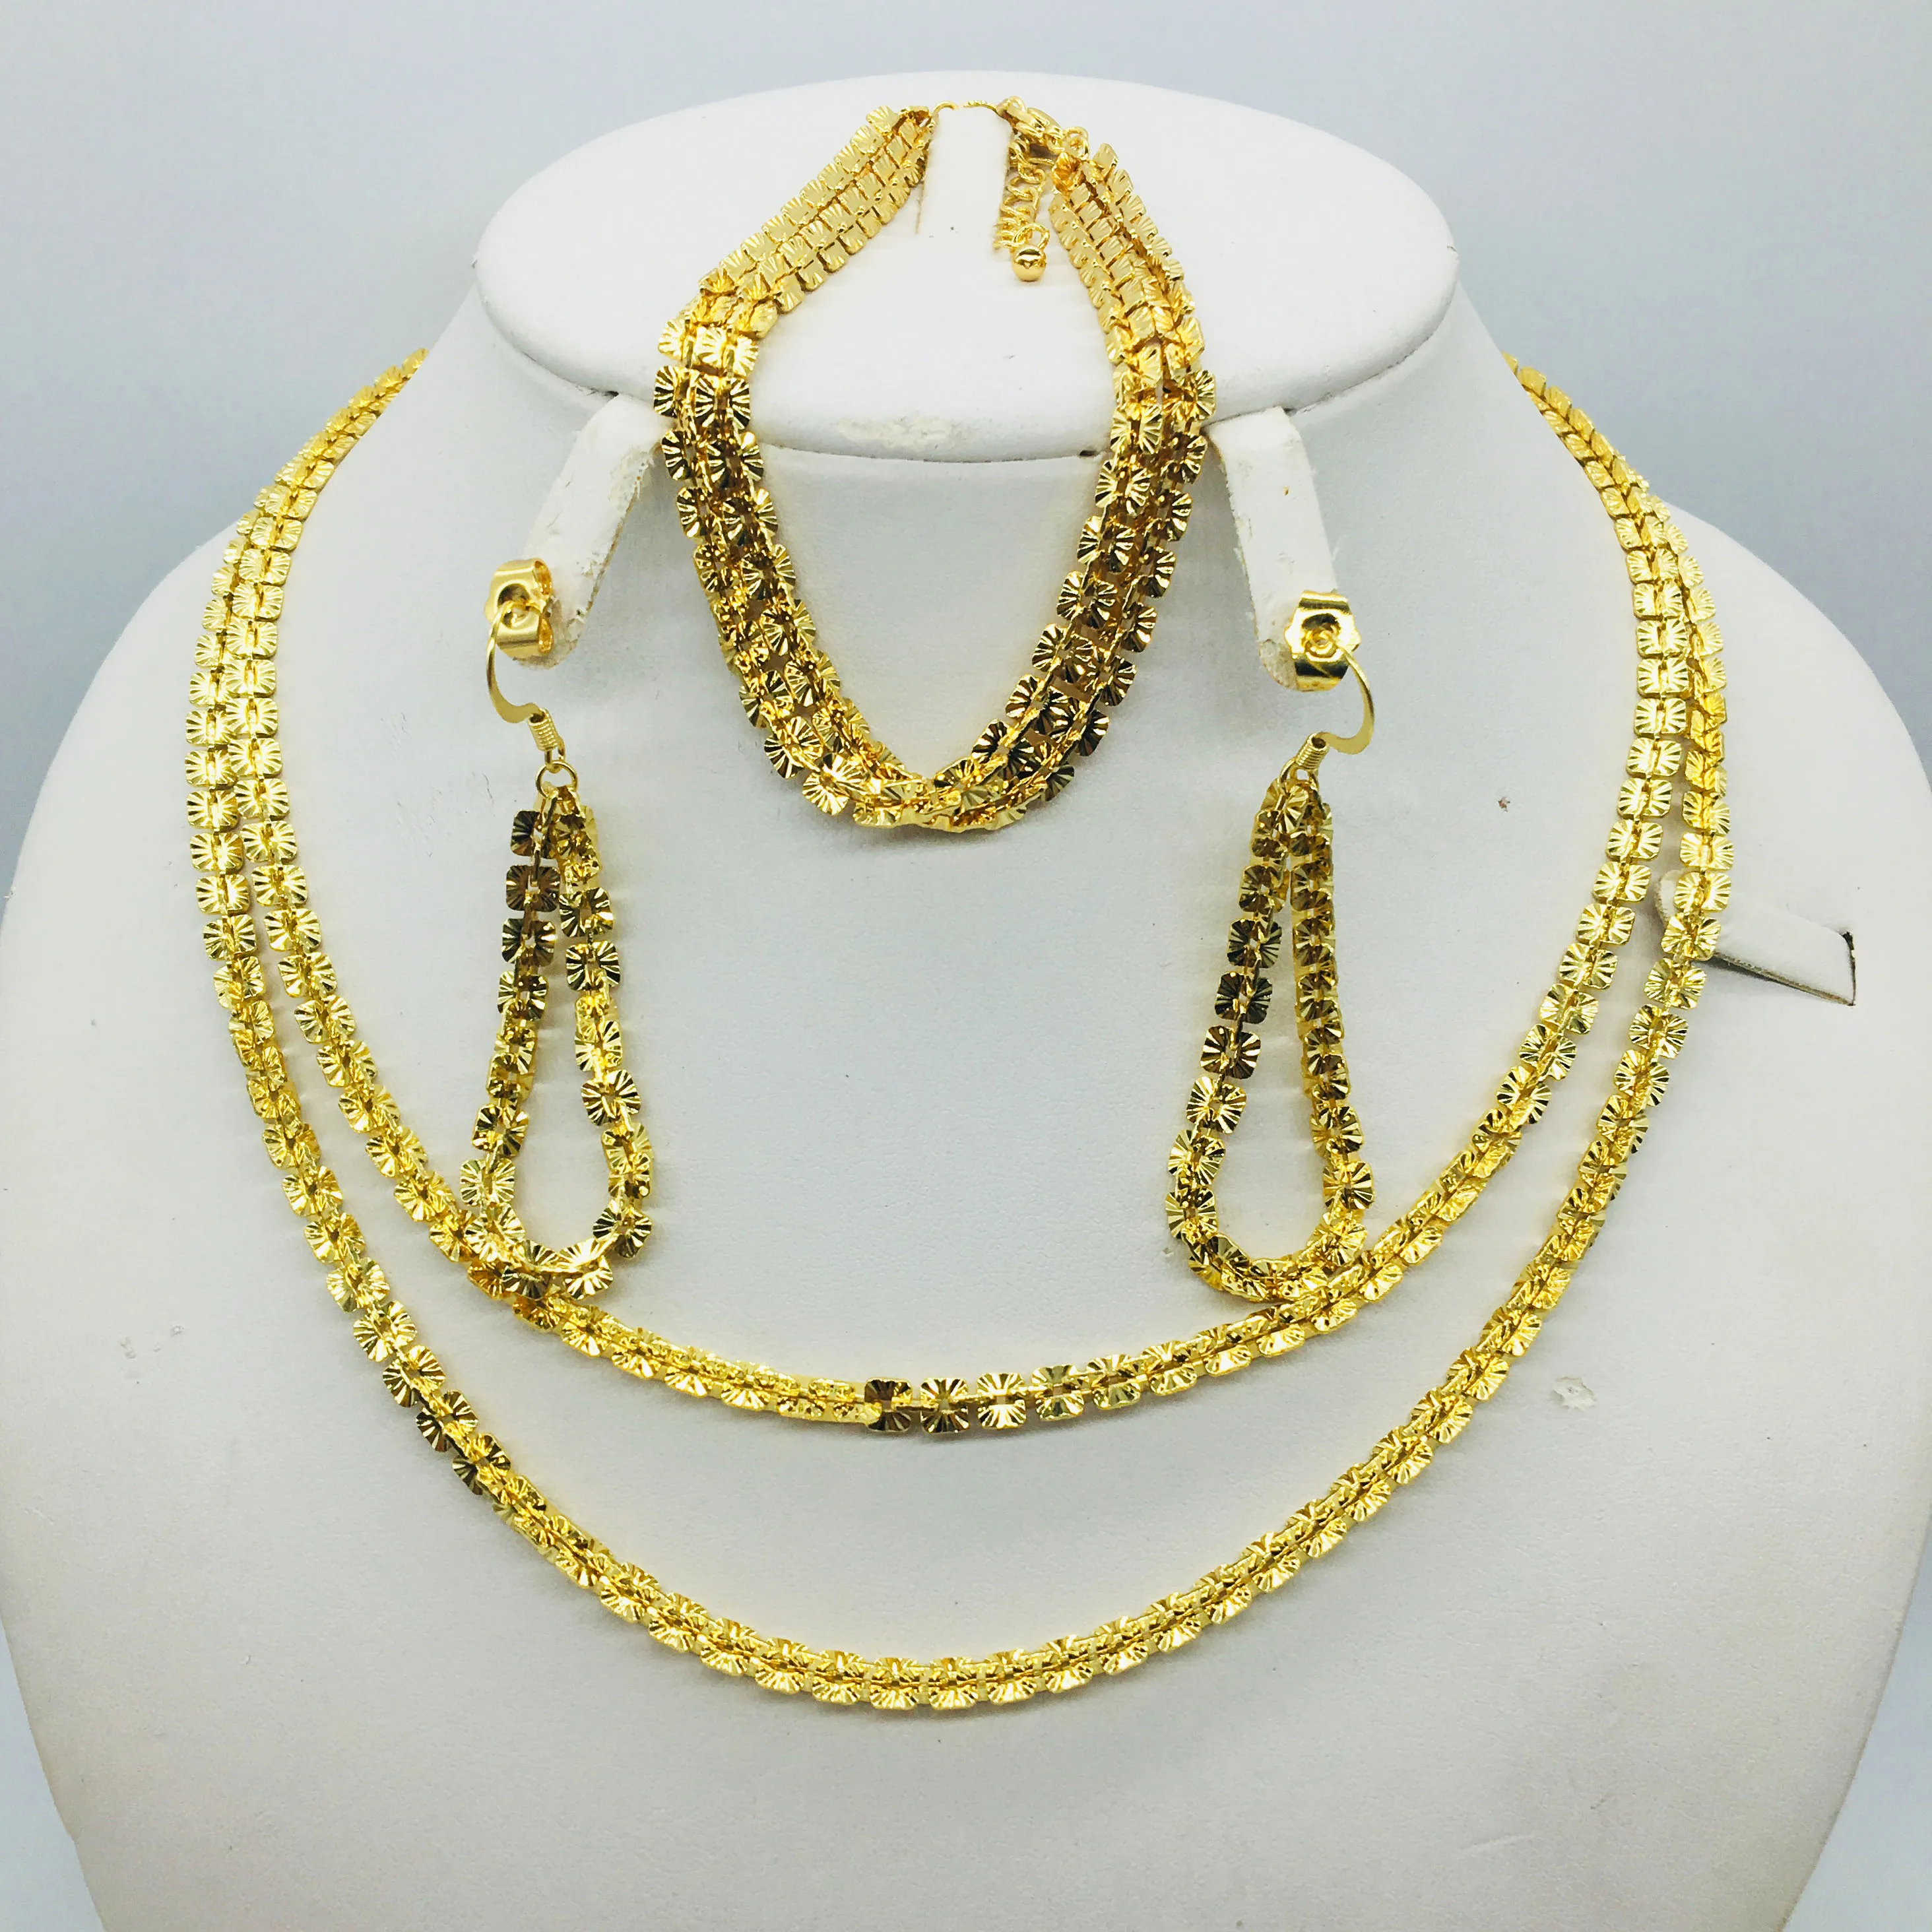 

Оптовая продажа, новинка, Дубай, золотые ювелирные изделия, женская мода, ожерелье, бутик, ювелирный набор, свадебное ожерелье, 24k золото, дизайнерское ожерелье